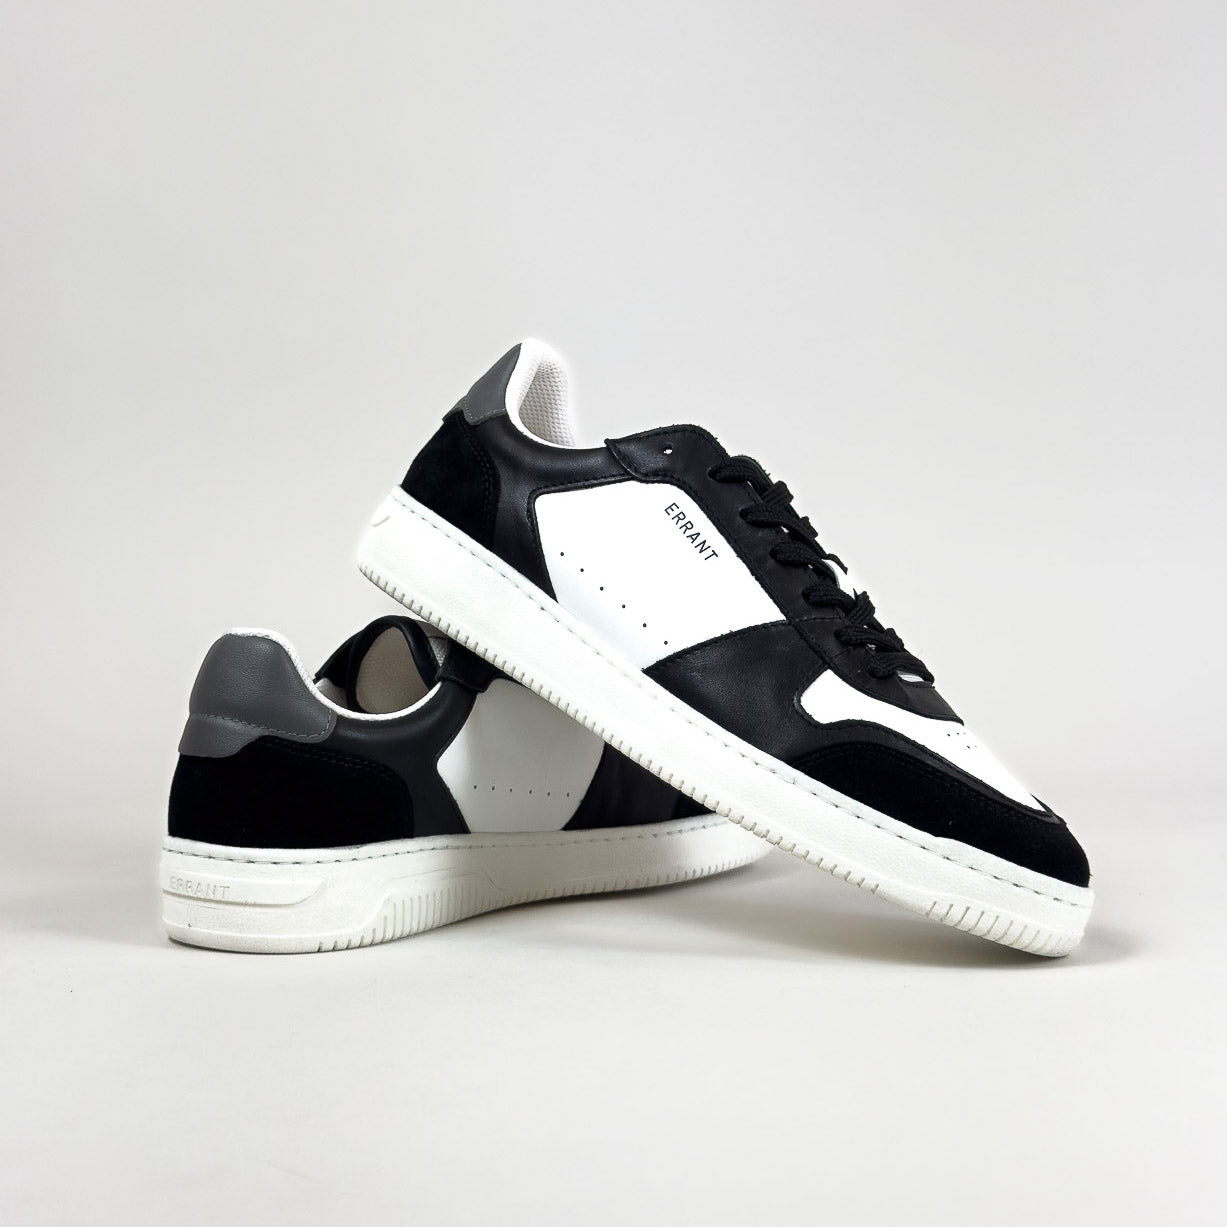 Low Sneaker - Black Teal med sorte snørebånd i studie med hvid baggrund